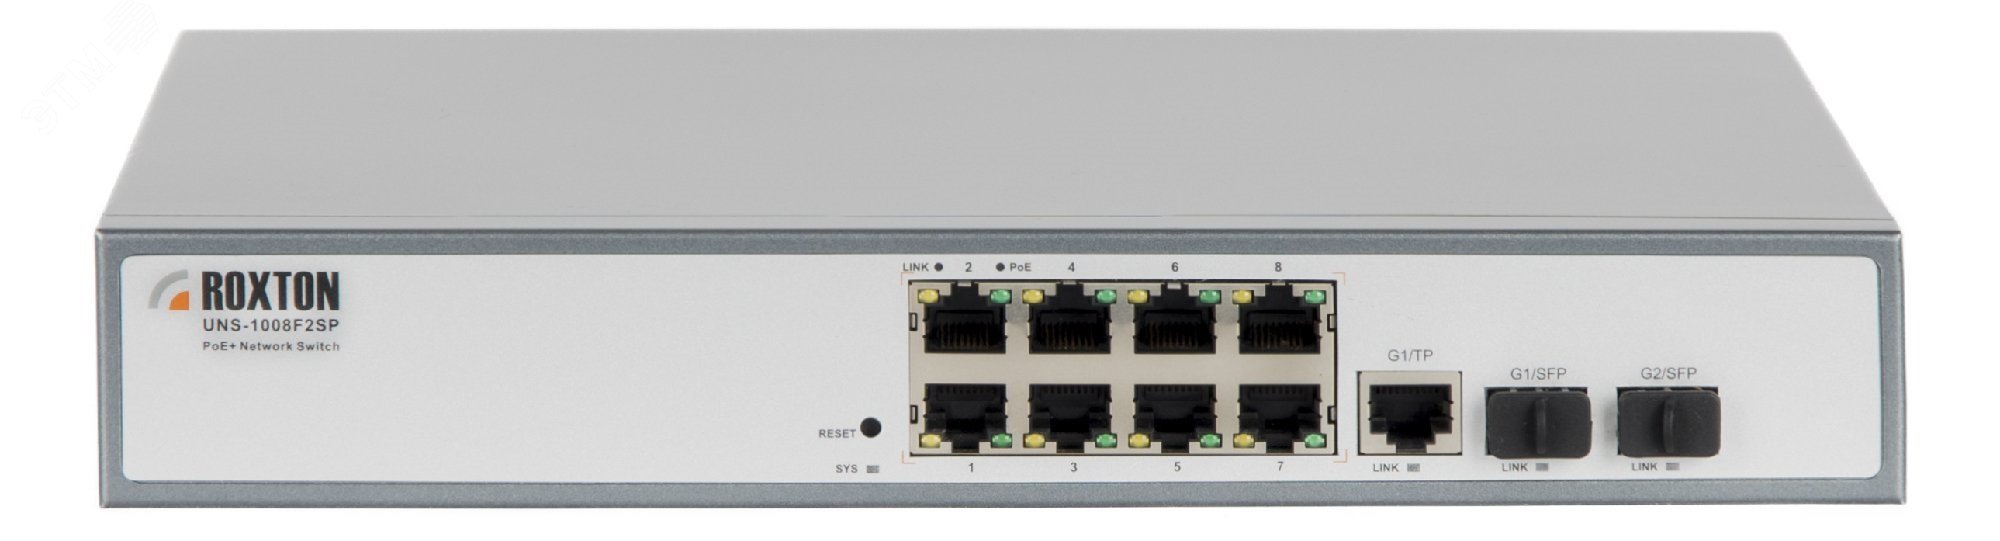 Коммутатор неуправляемый сетевой , порт 10/100 Мбит/с х 8, порт TF х 1, порт SFP х 2, PoE+(IEEE 802.3at-2009), 1U UNS-1008F2SP Roxton